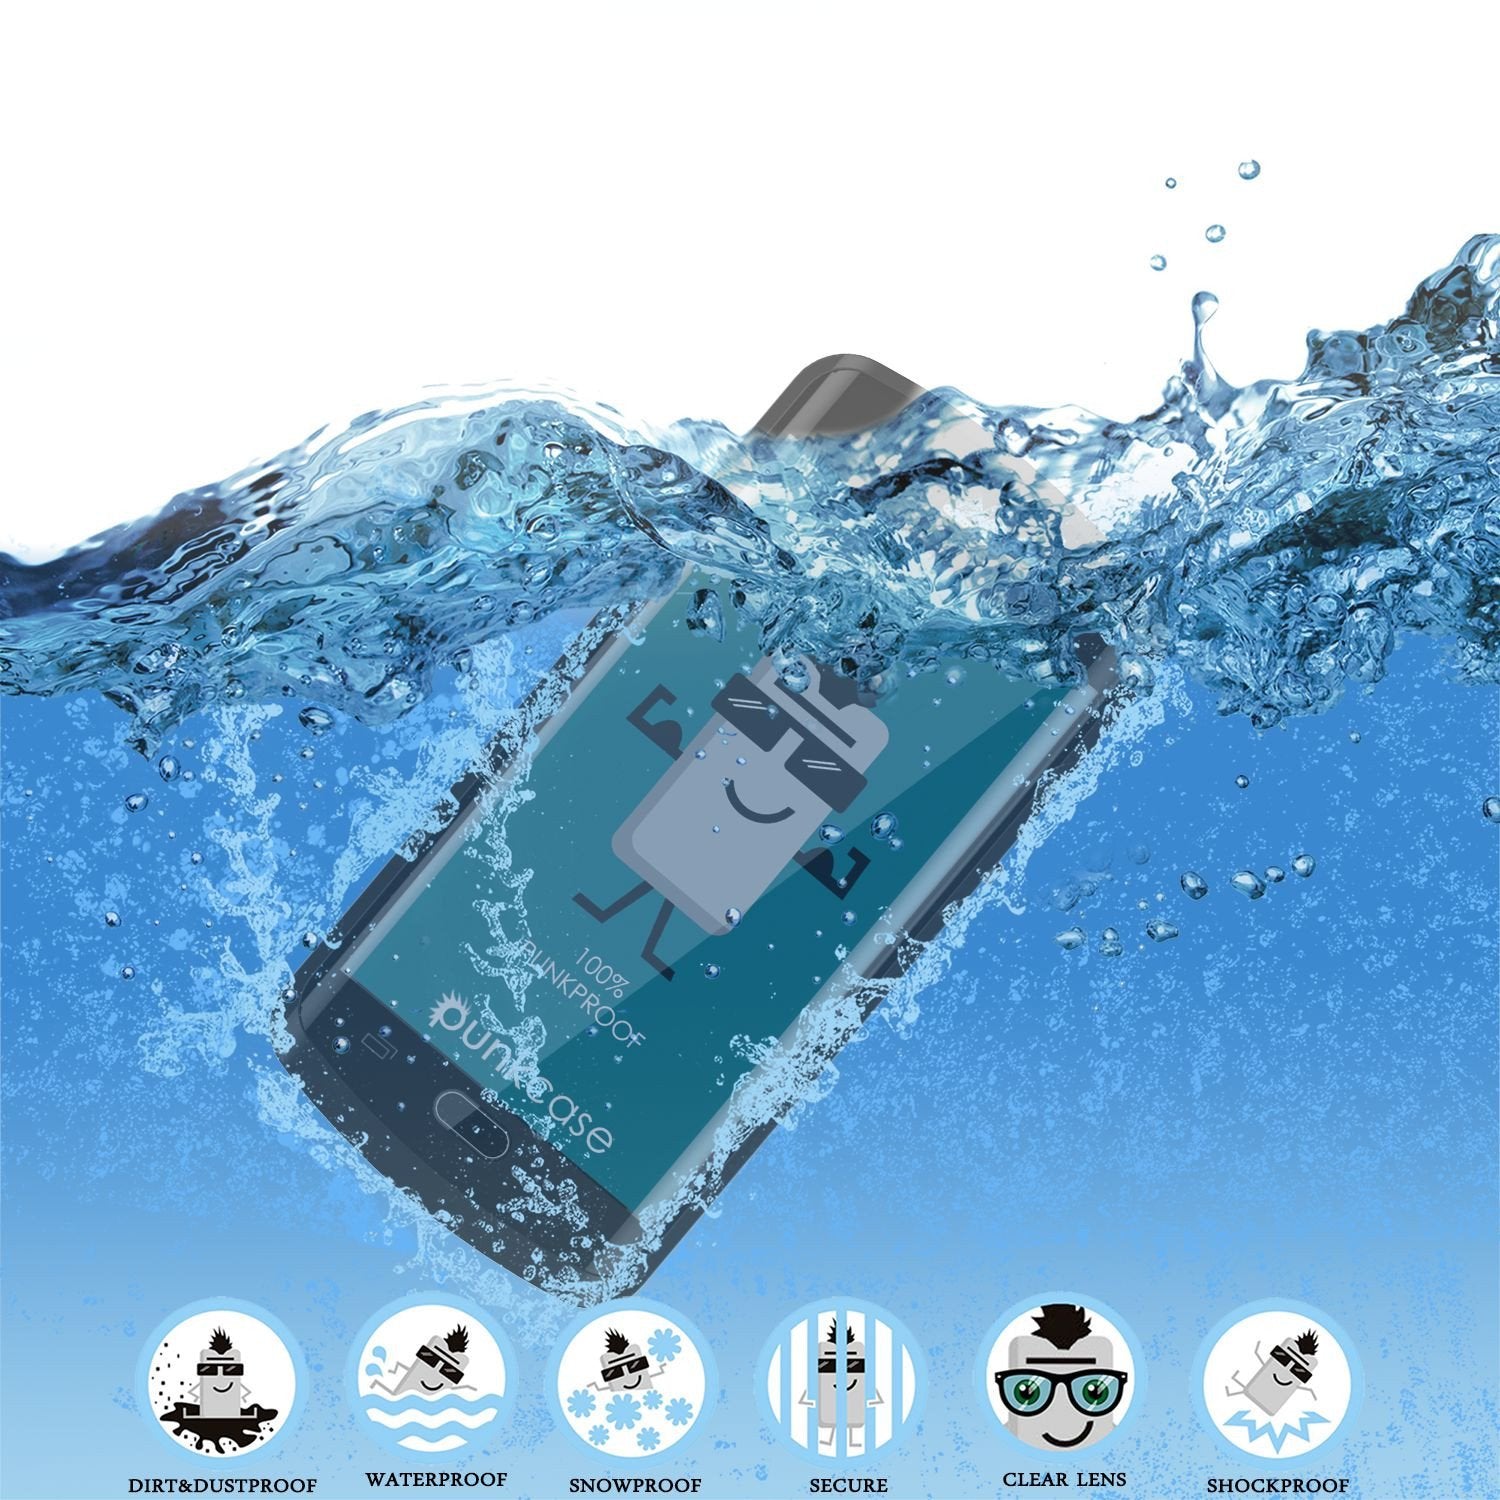 Galaxy S6 EDGE Plus Waterproof Case, Punkcase StudStar Black Shock/Dirt Proof | Lifetime Warranty